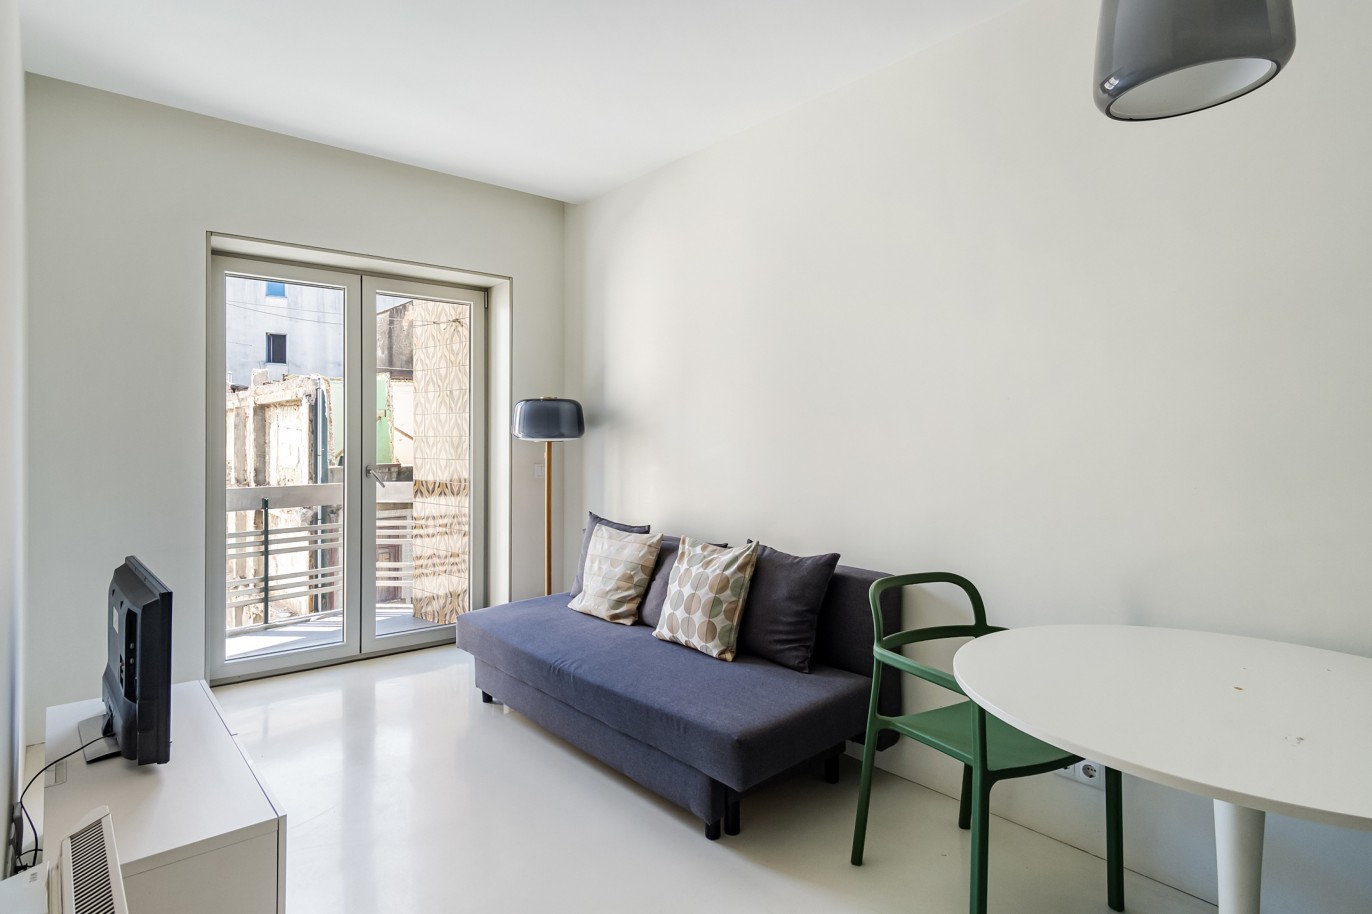 Apartamento com varanda, para venda, na Baixa do Porto_219483